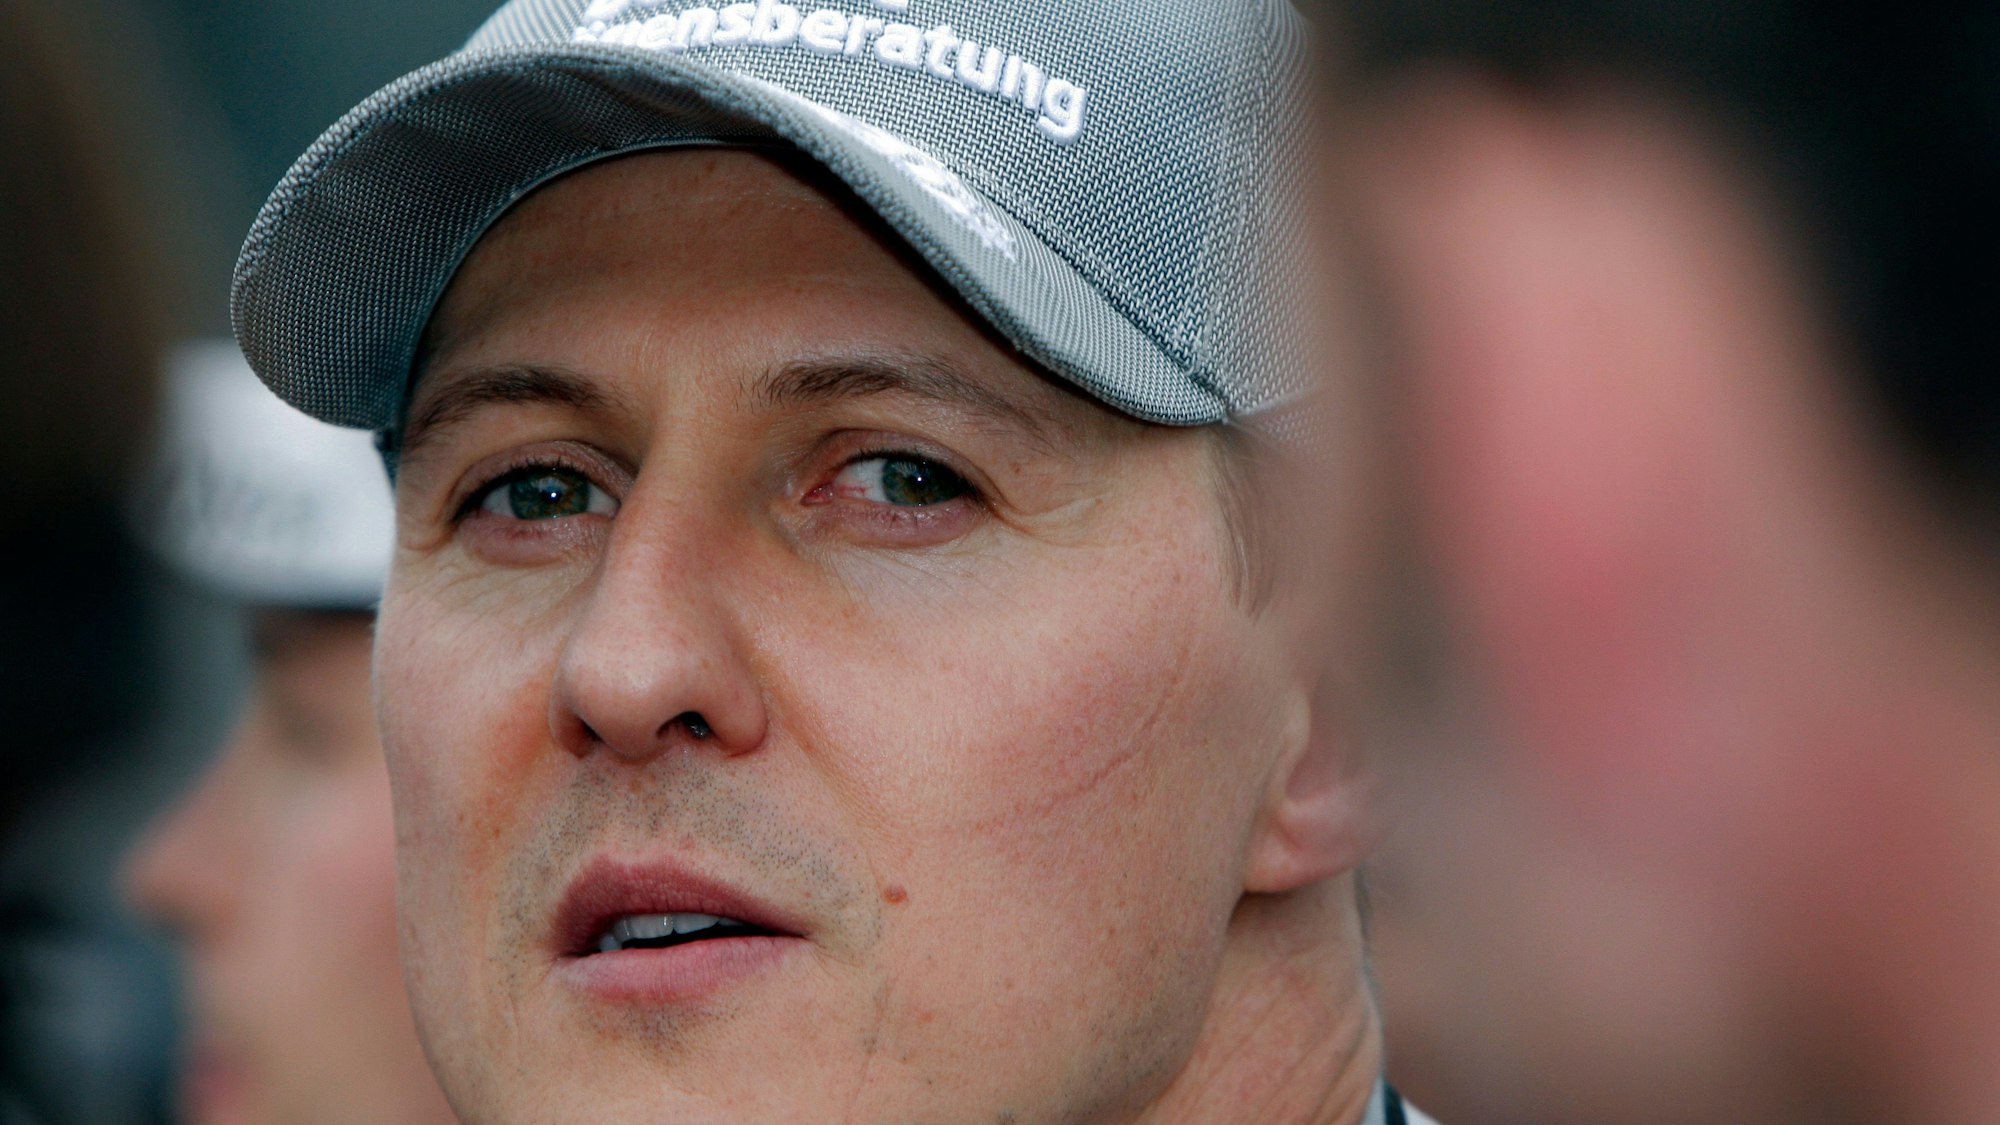 Michael Schumacher blickt kurz vor dem Start eines Formel-1-Rennens in die Kamera. Er trägt eine Kappe seines Teams Mercedes. Mit Ferrari wurde Schumacher zwischen 2000 und 2004 fünfmal Formel-1-Weltmeister.